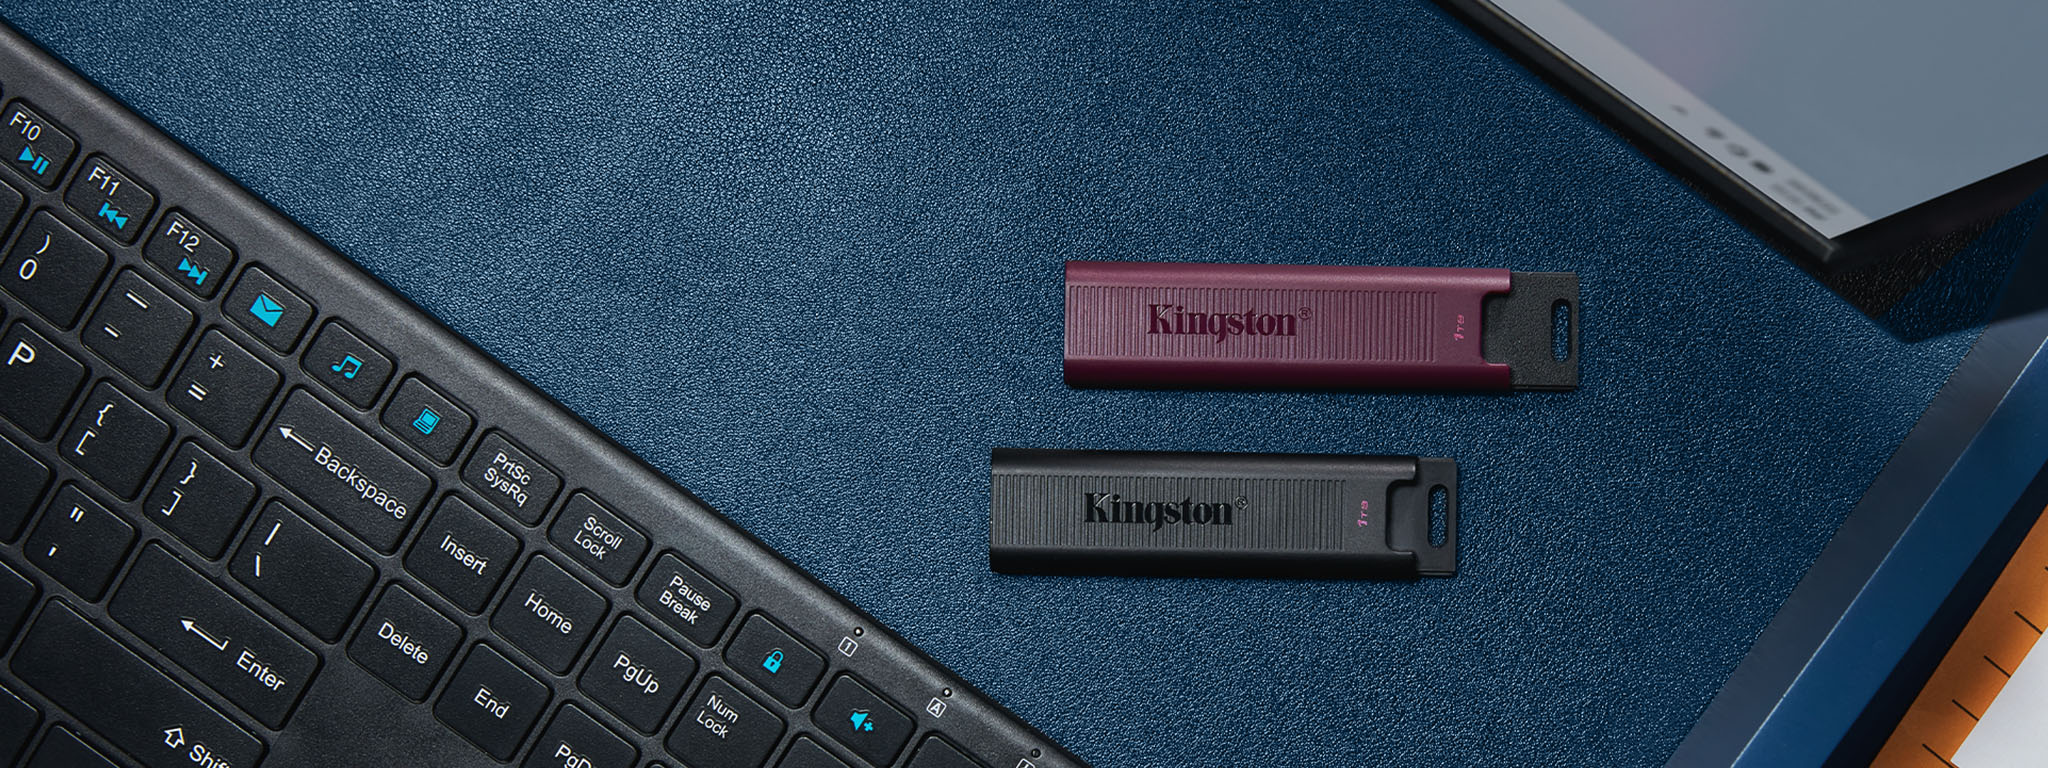 Вид сверху на флеш-накопители DT Max, USB-C черного цвета и USB-A бордового цвета, расположенные между клавиатурой и монитором